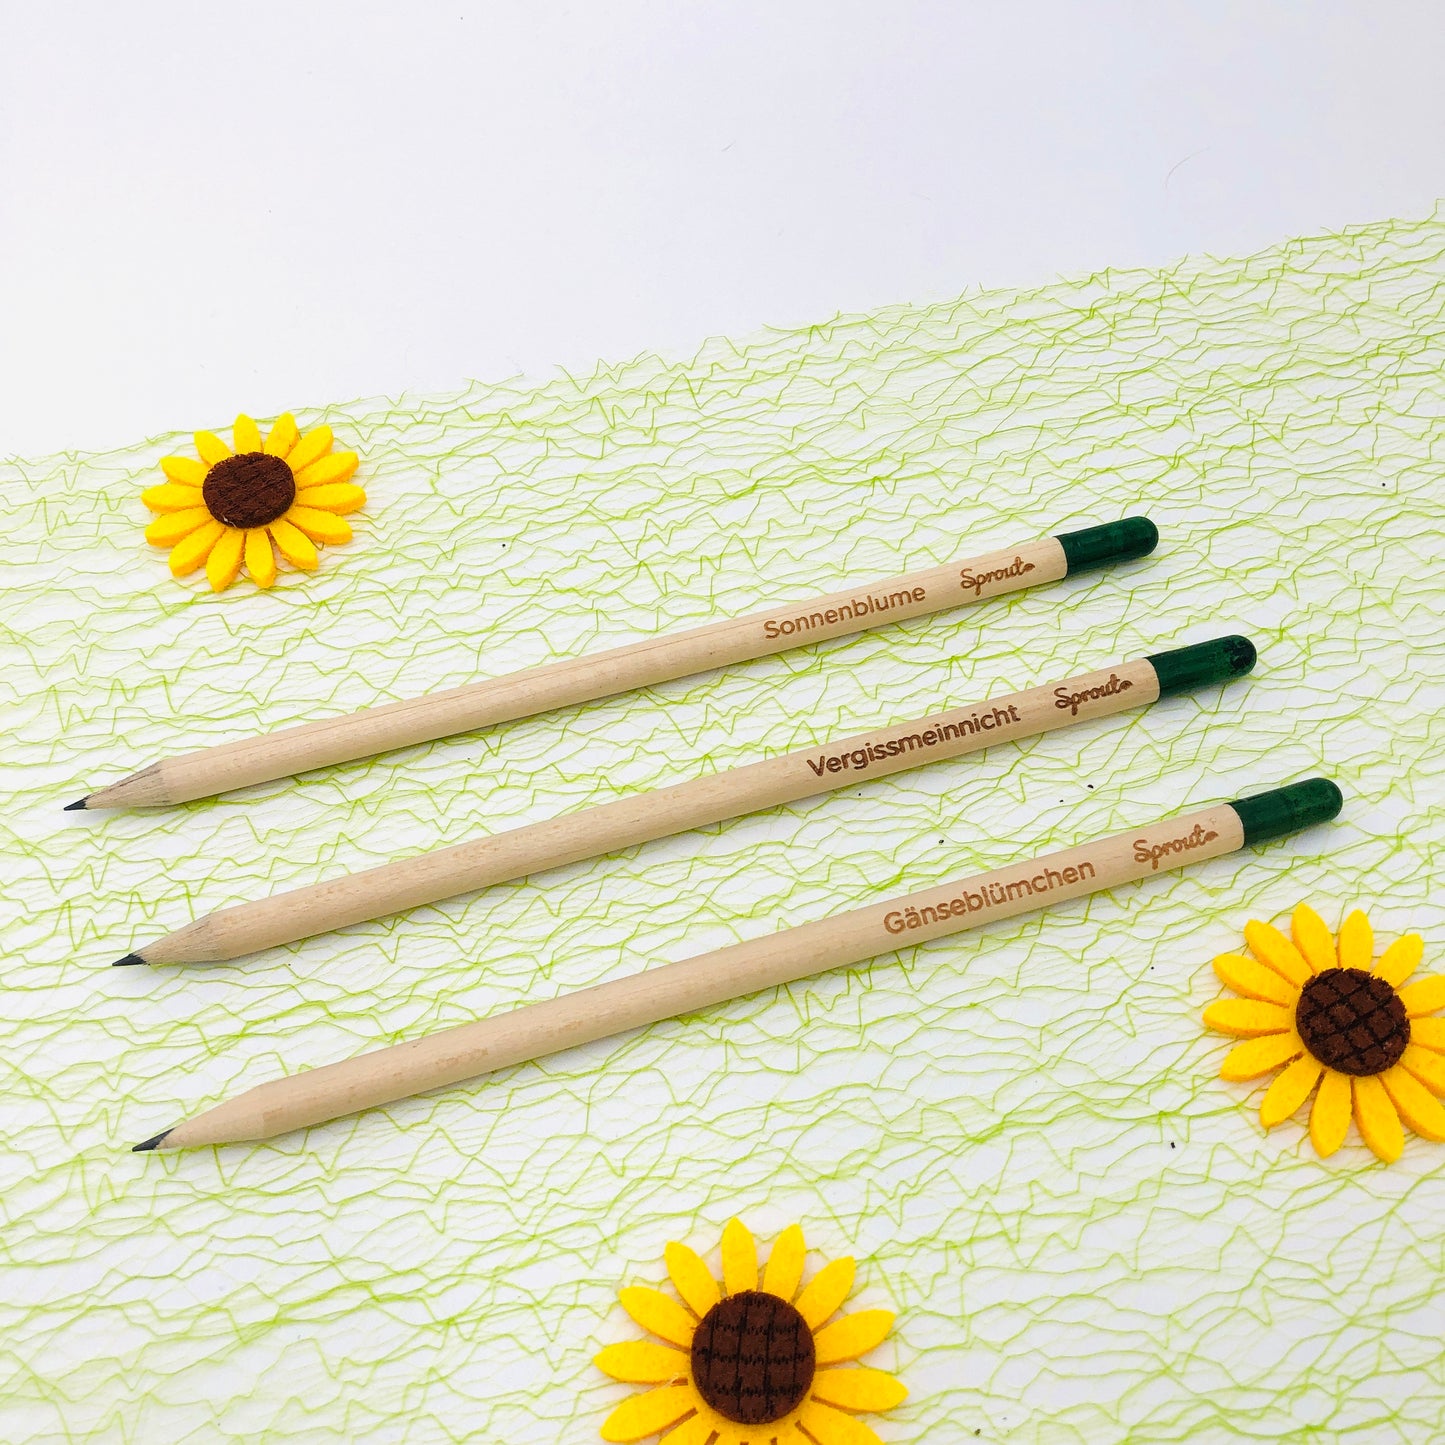 Geschenk zur Einschulung für Schultüte - Bleistift zum Einpflanzen Set - Schulkind 2024 - personalisiert - Schulanfang